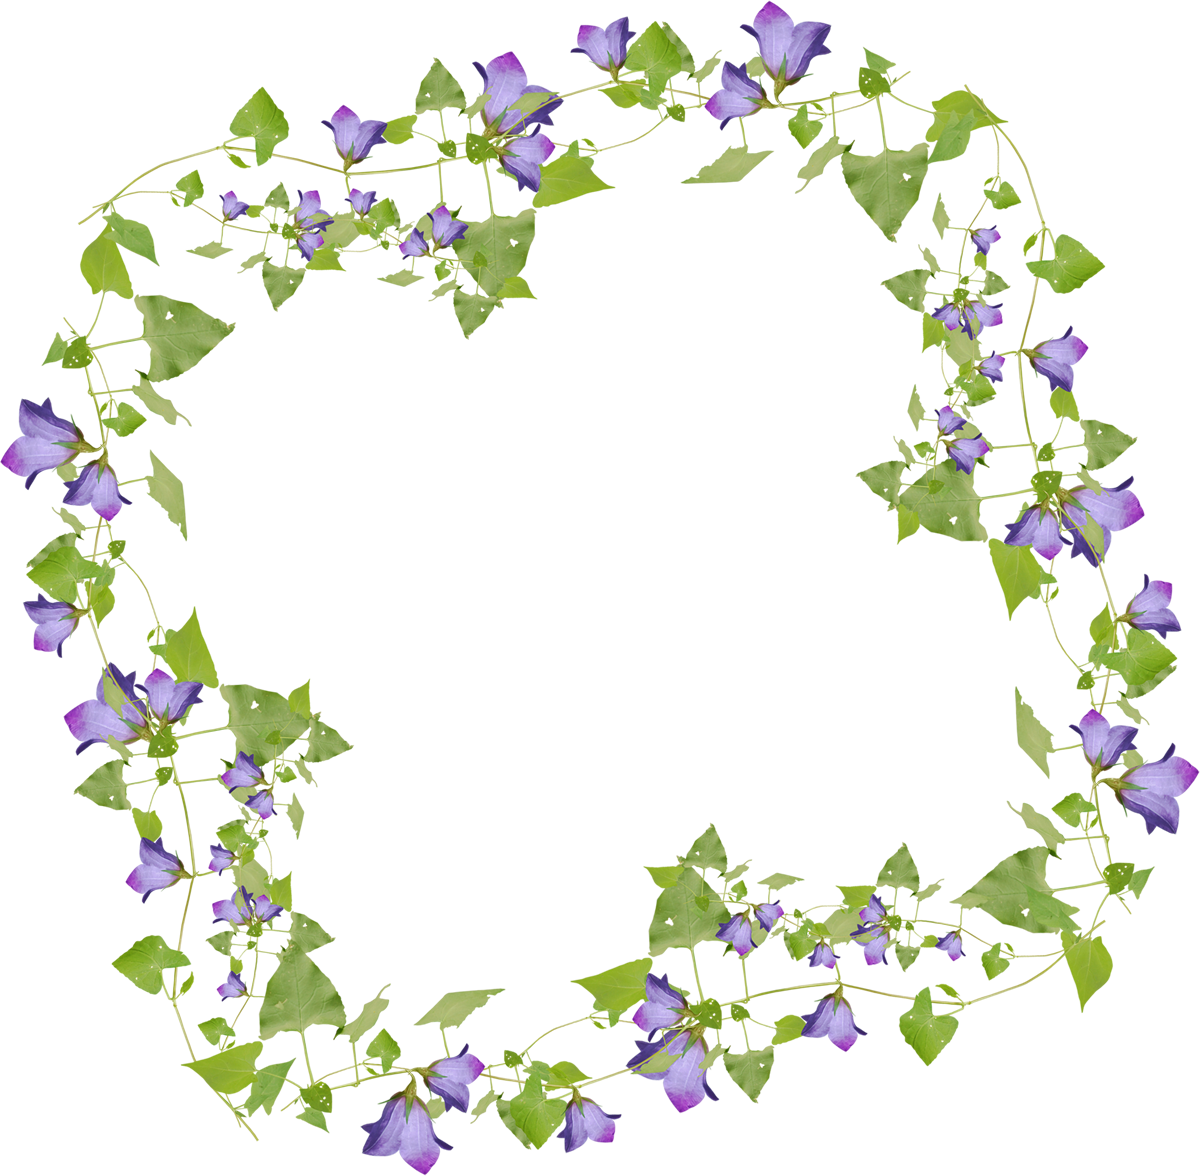 桔梗 キキョウ のイラスト 画像no 8 桔梗の花と葉のフレーム 無料のフリー素材集 百花繚乱